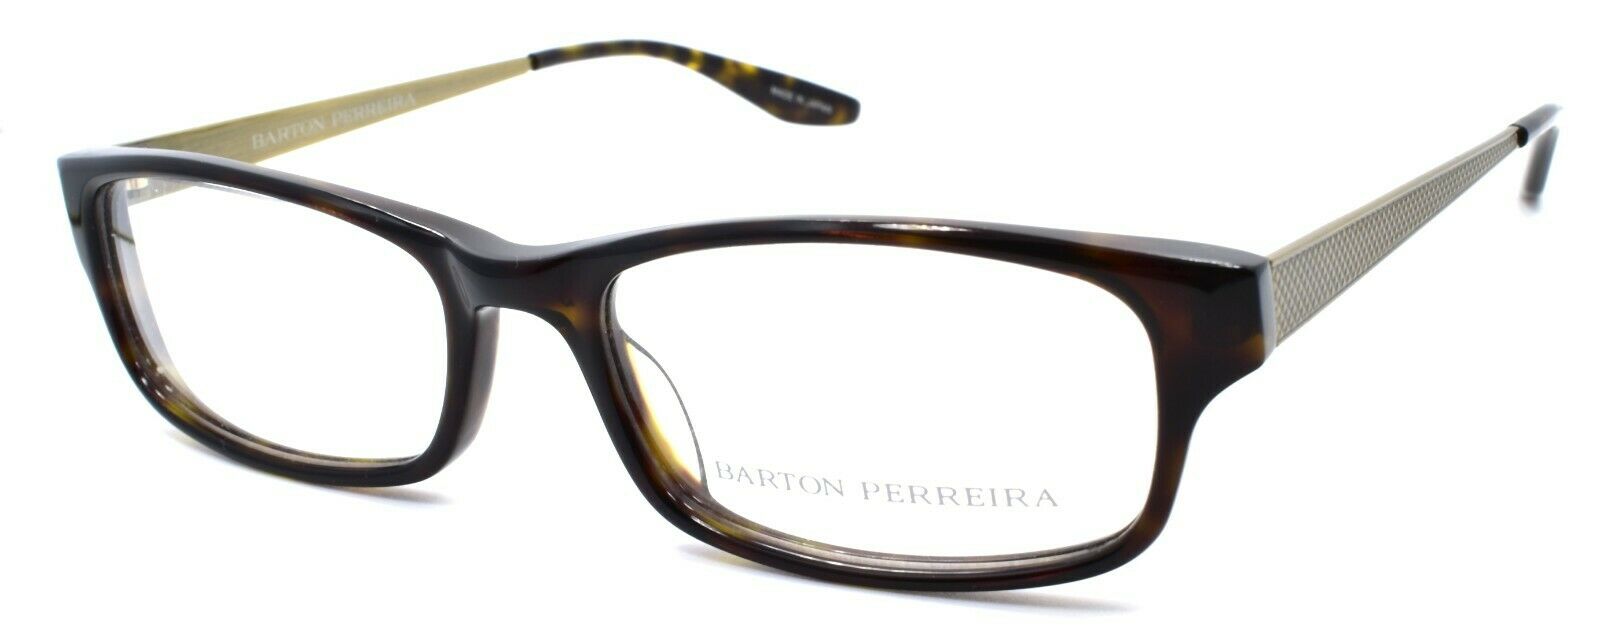 1-Barton Perreira Nickelas DAW/ANG Men's Eyeglasses Frames 53-17-145 Dark Walnut-672263039037-IKSpecs